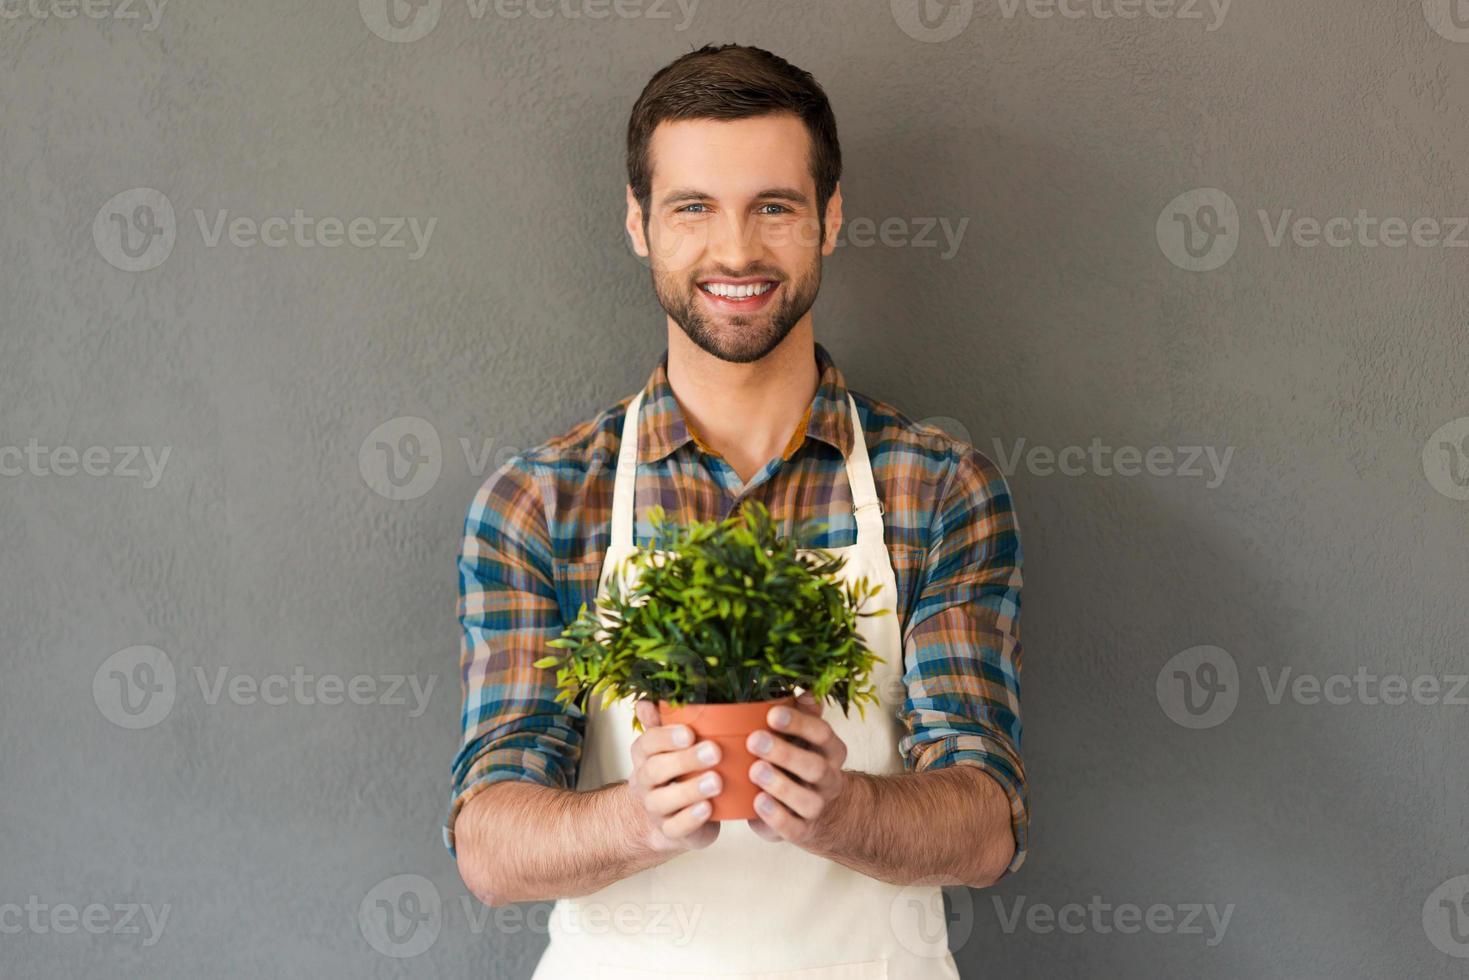 jardinero alegre. alegre joven jardinero sosteniendo una maceta y sonriendo a la cámara mientras se enfrenta a un fondo gris foto